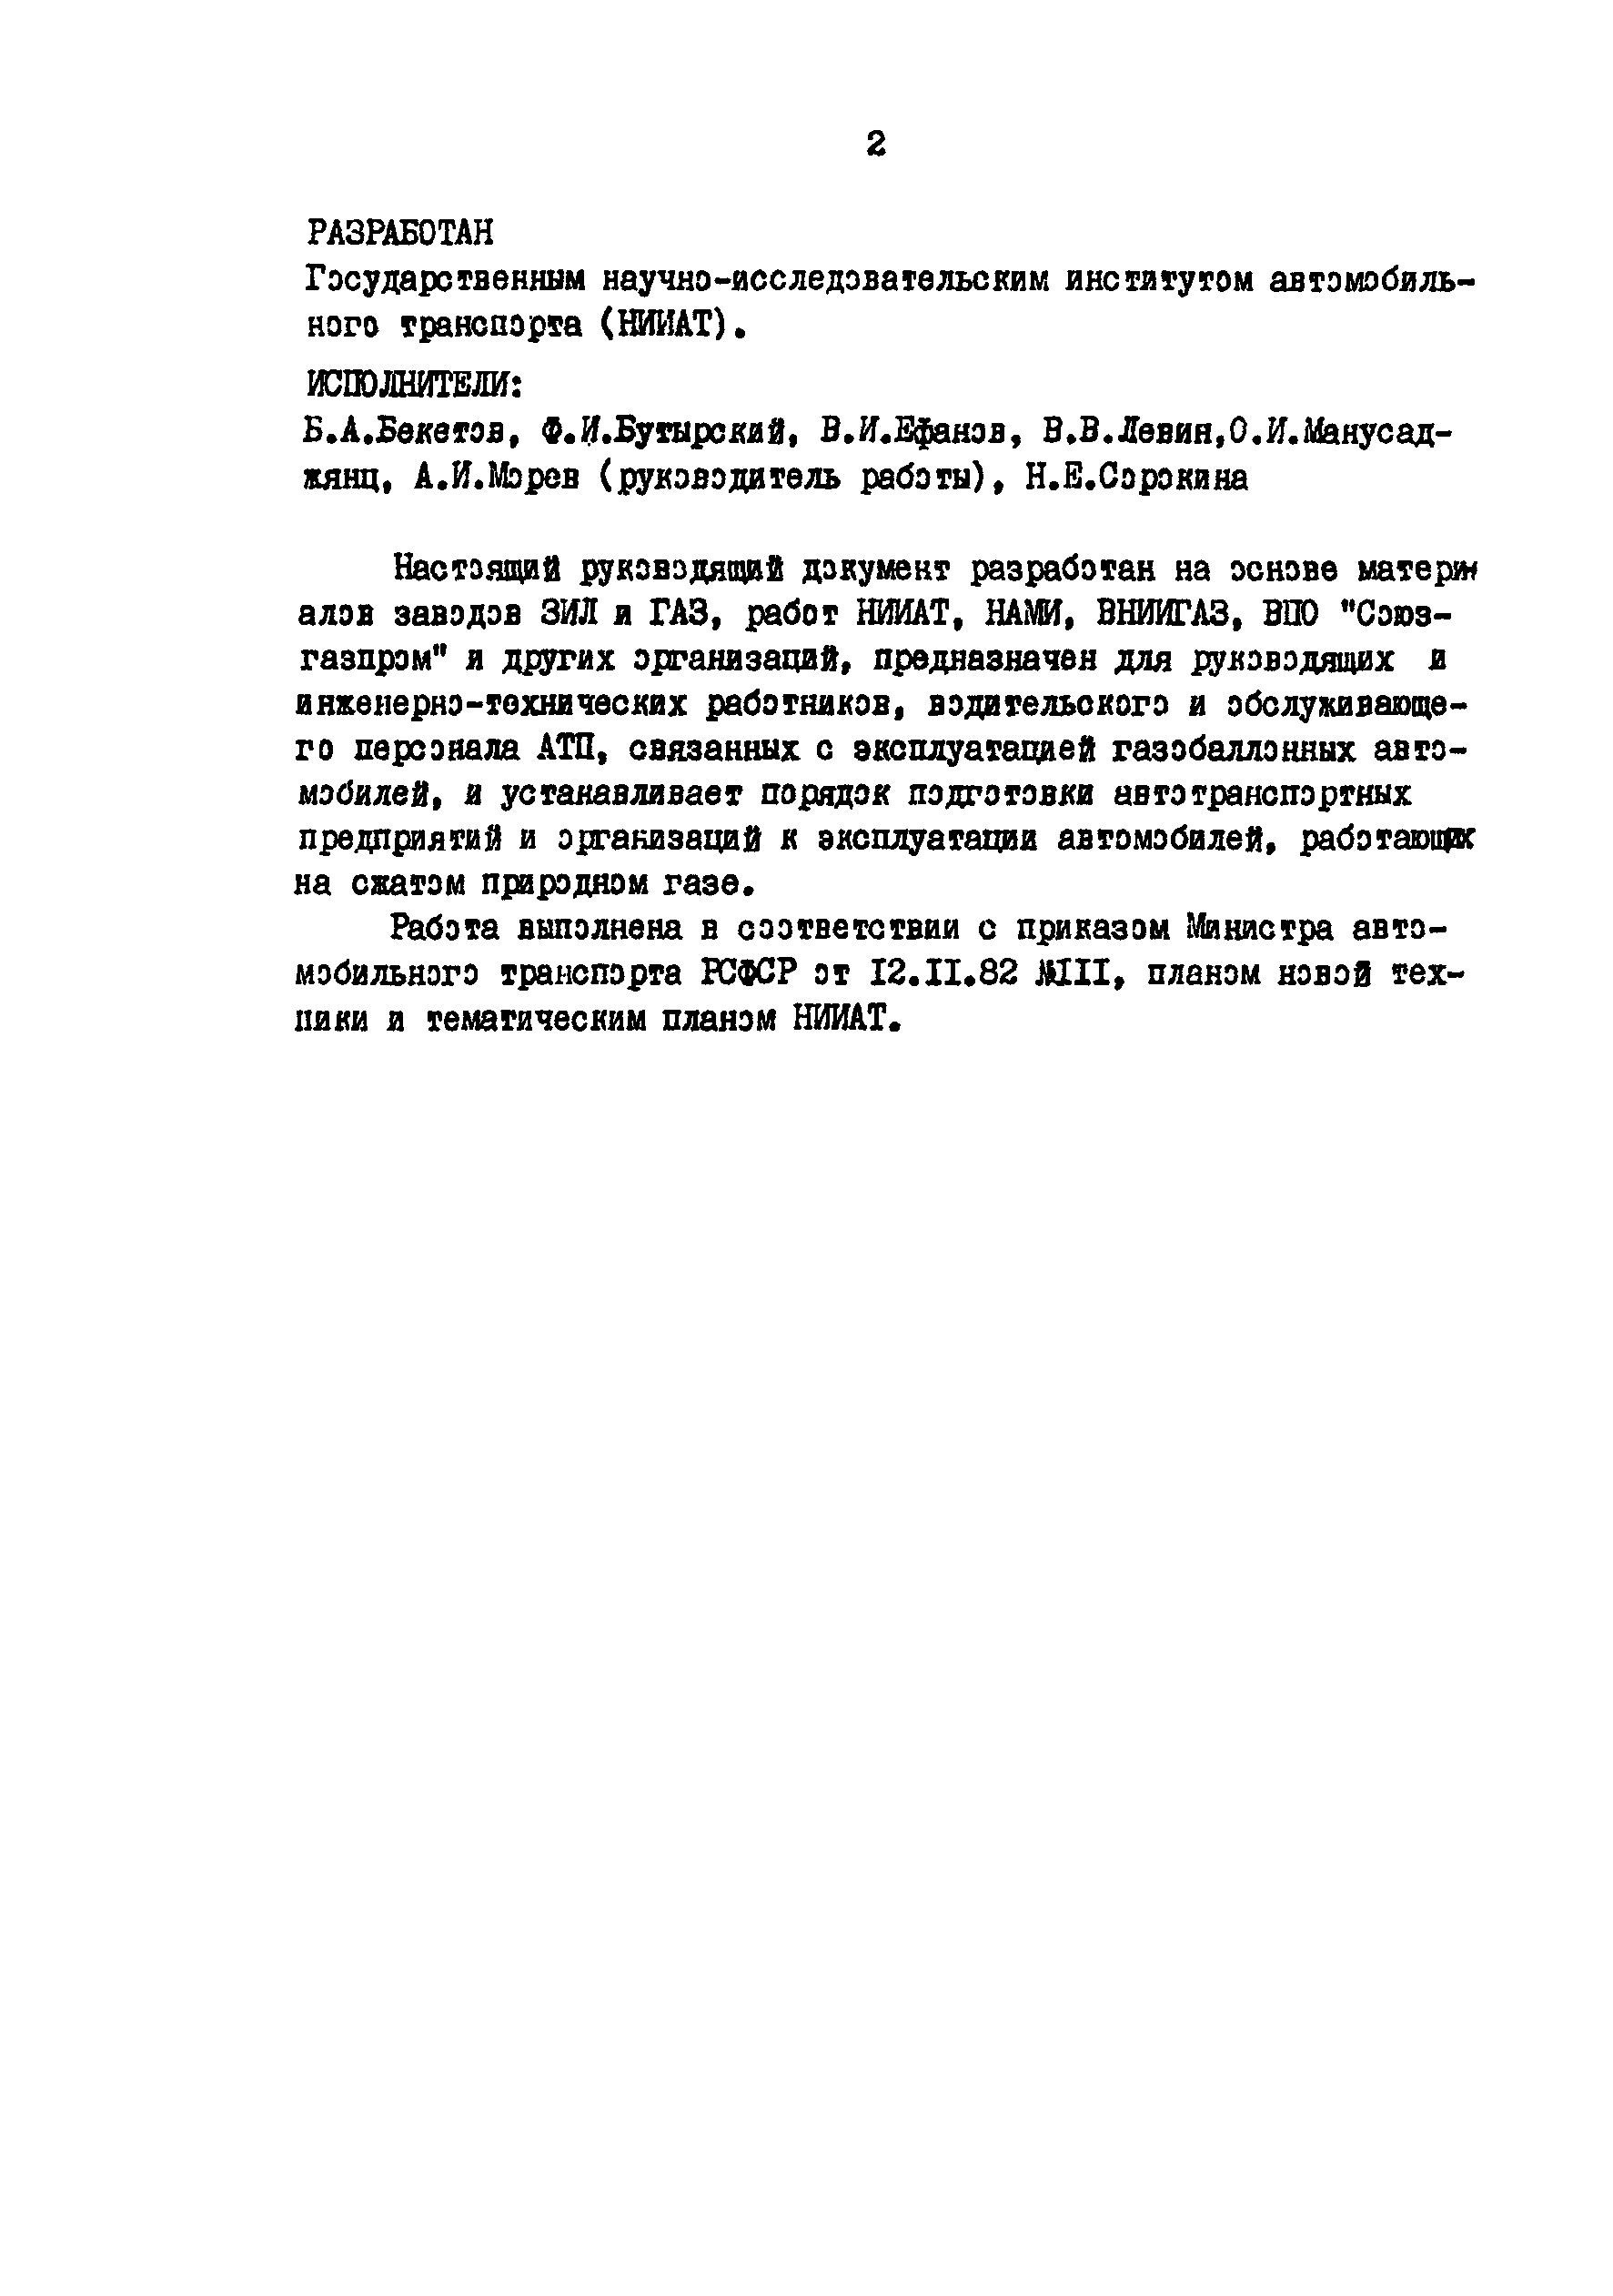 РД 200-РСФСР-12-0185-83